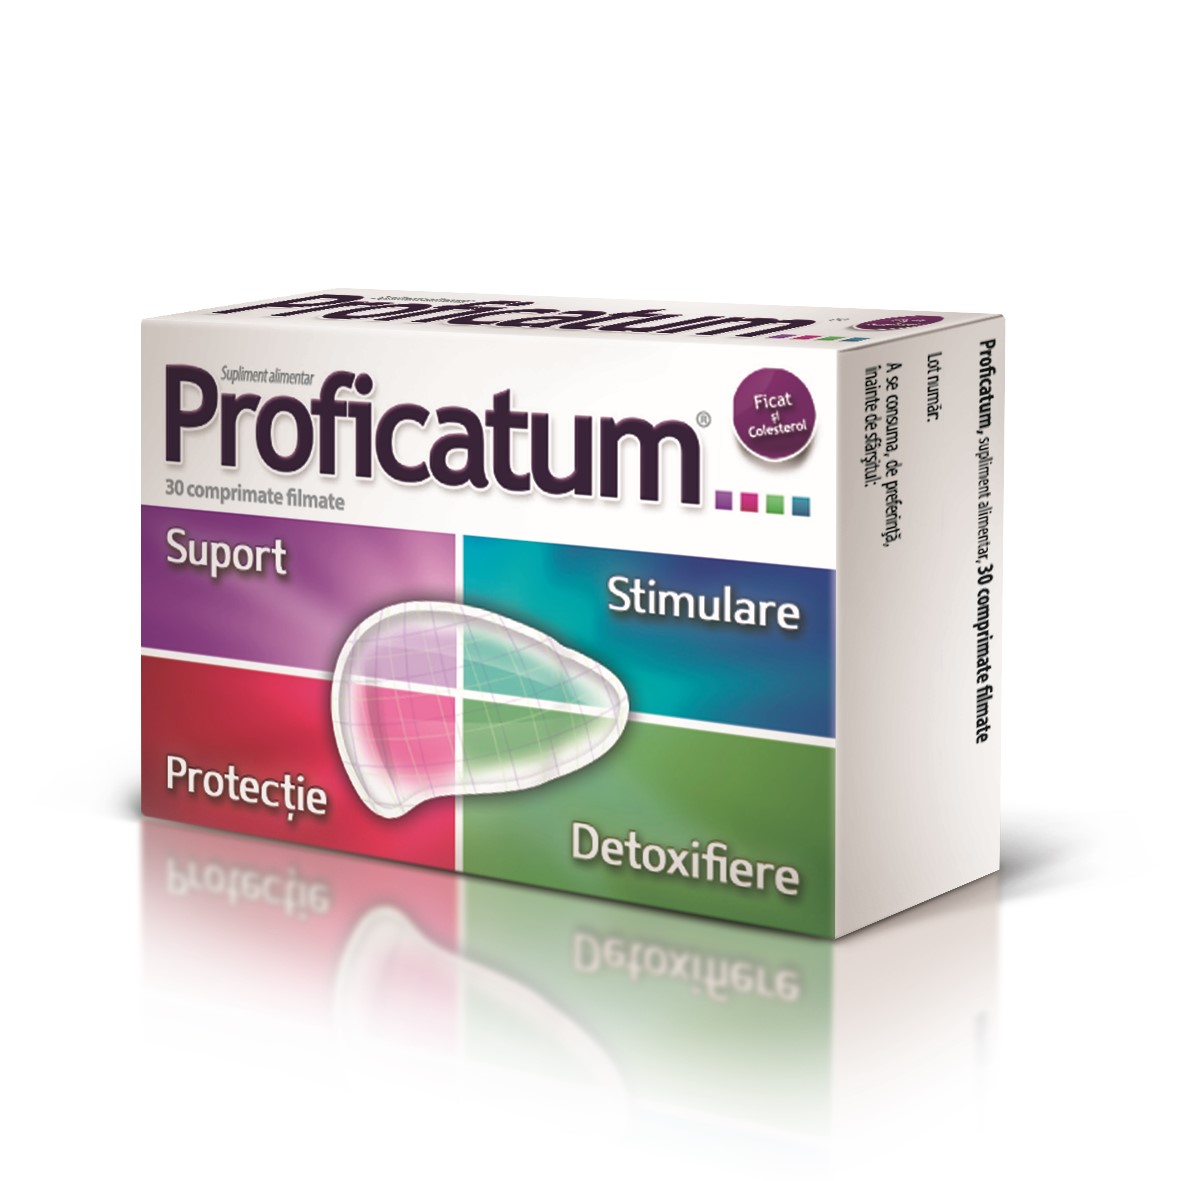 Protectoare hepatice - Proficatum, 30 comprimate filmate, Aflofarm, epastila.ro